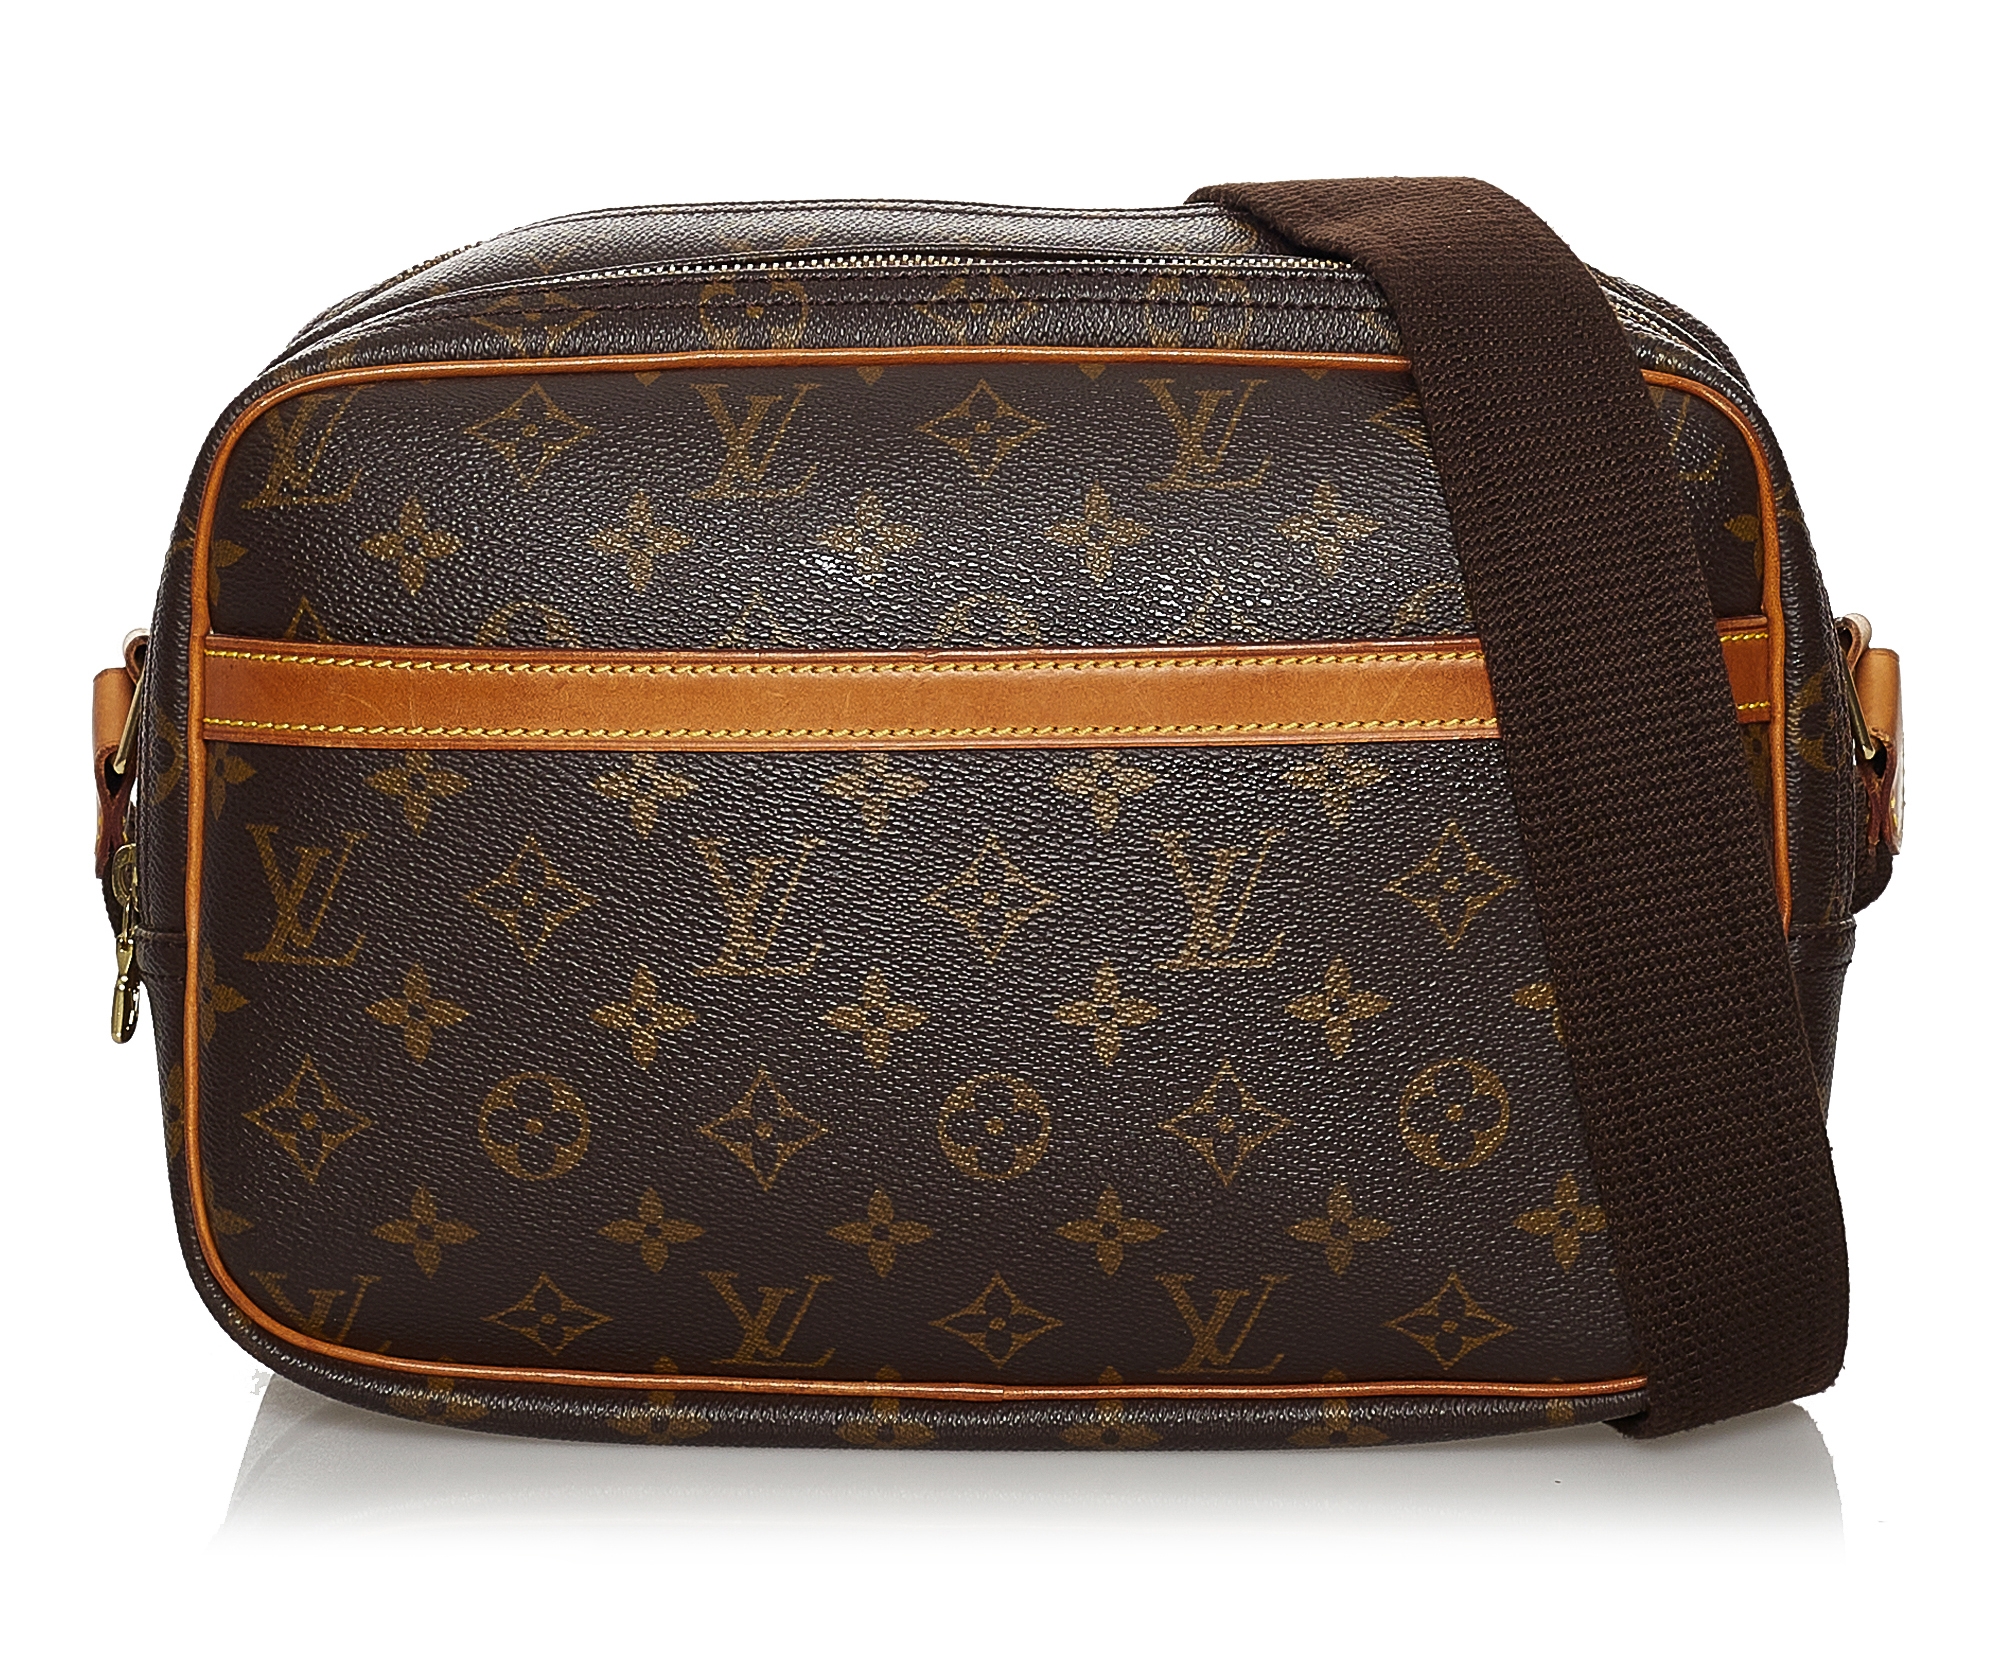 Borsa a tracolla Louis Vuitton in tela monogram marrone e pelle